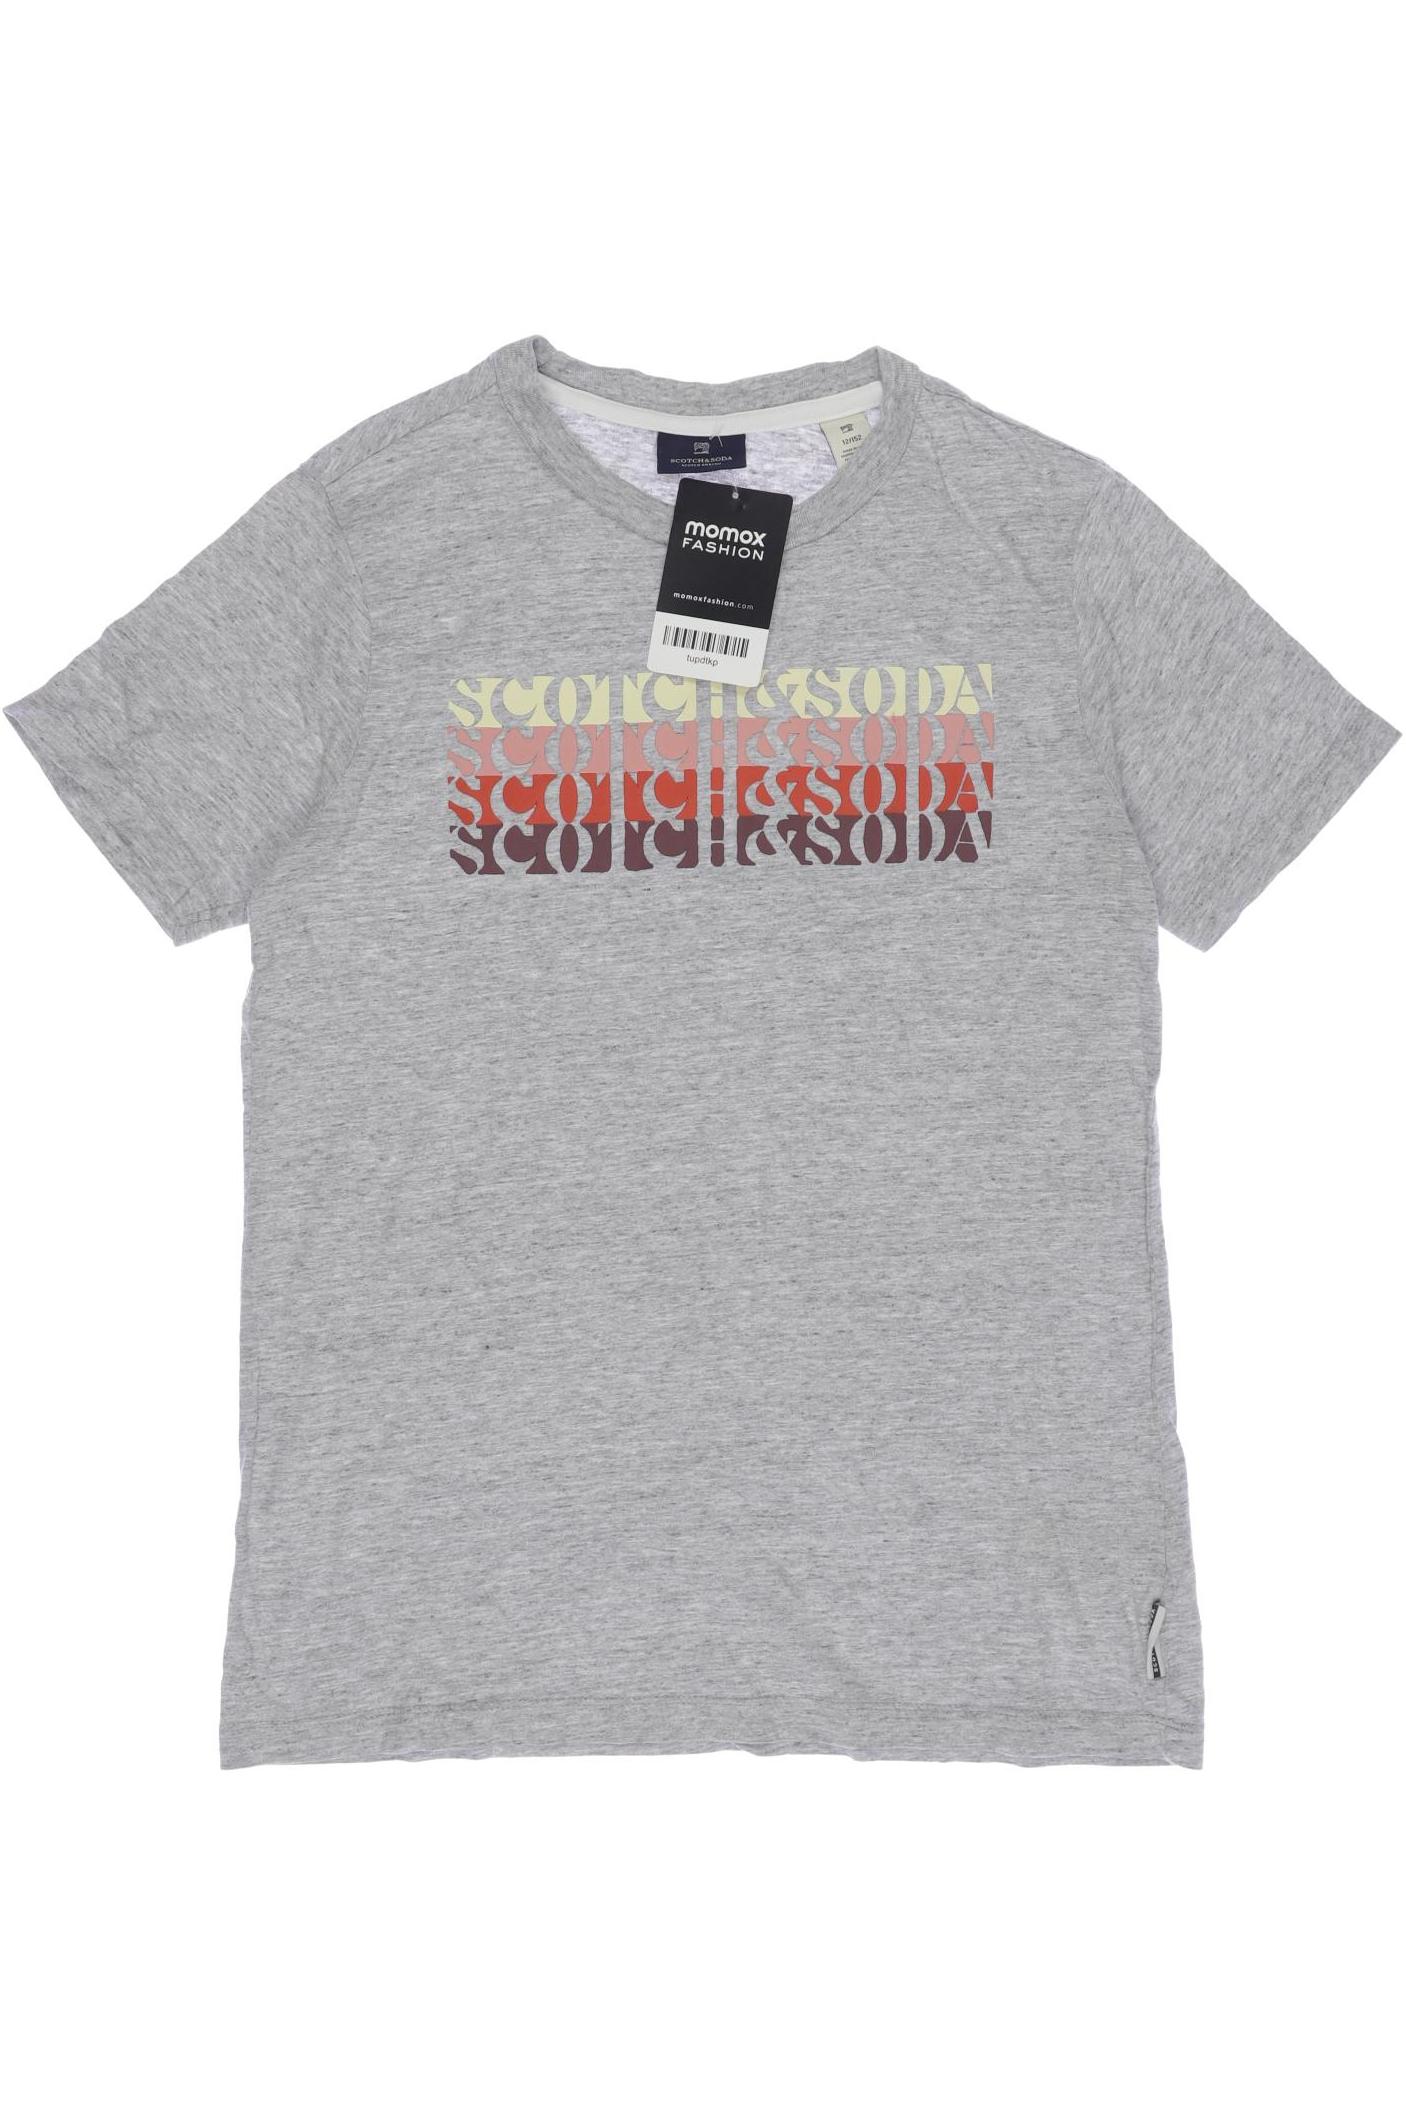 Scotch & Soda Jungen T-Shirt, grau von Scotch & Soda